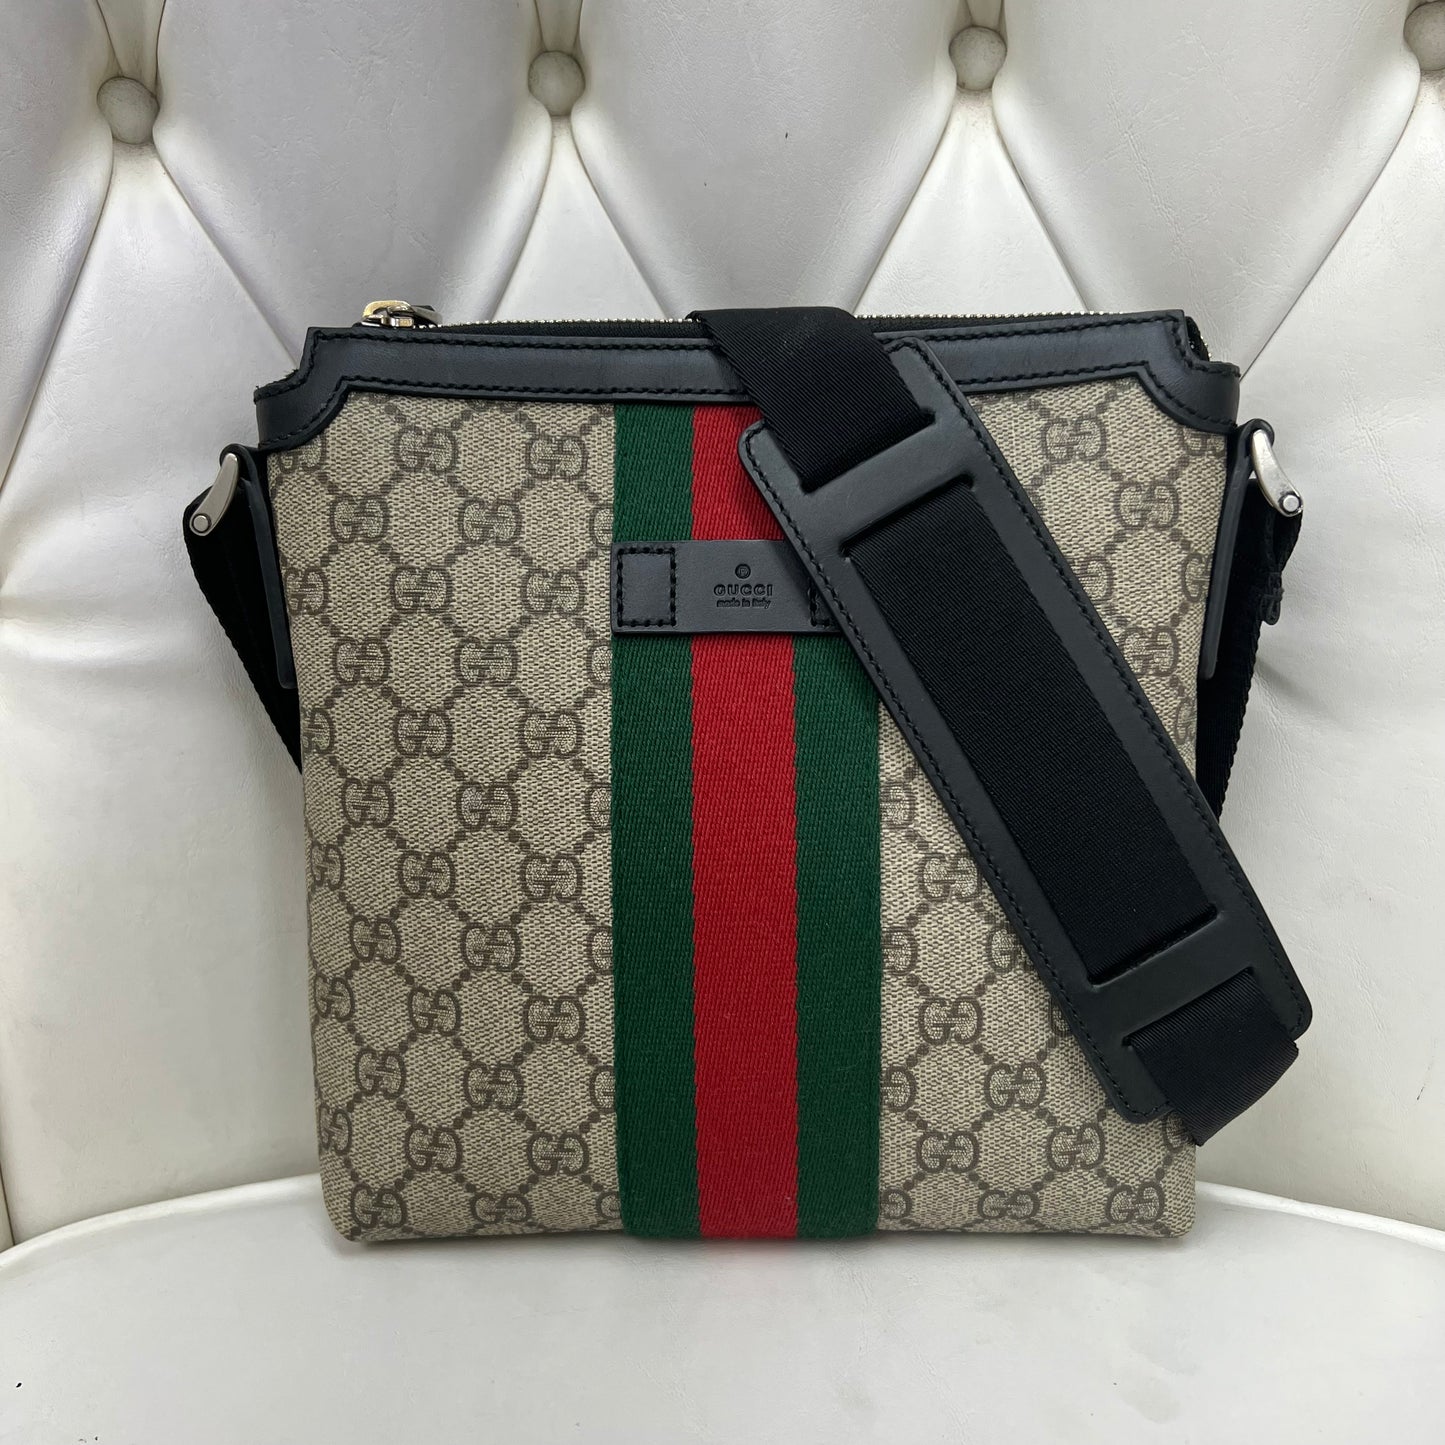 Gucci GG Supreme Web Messenger Bag